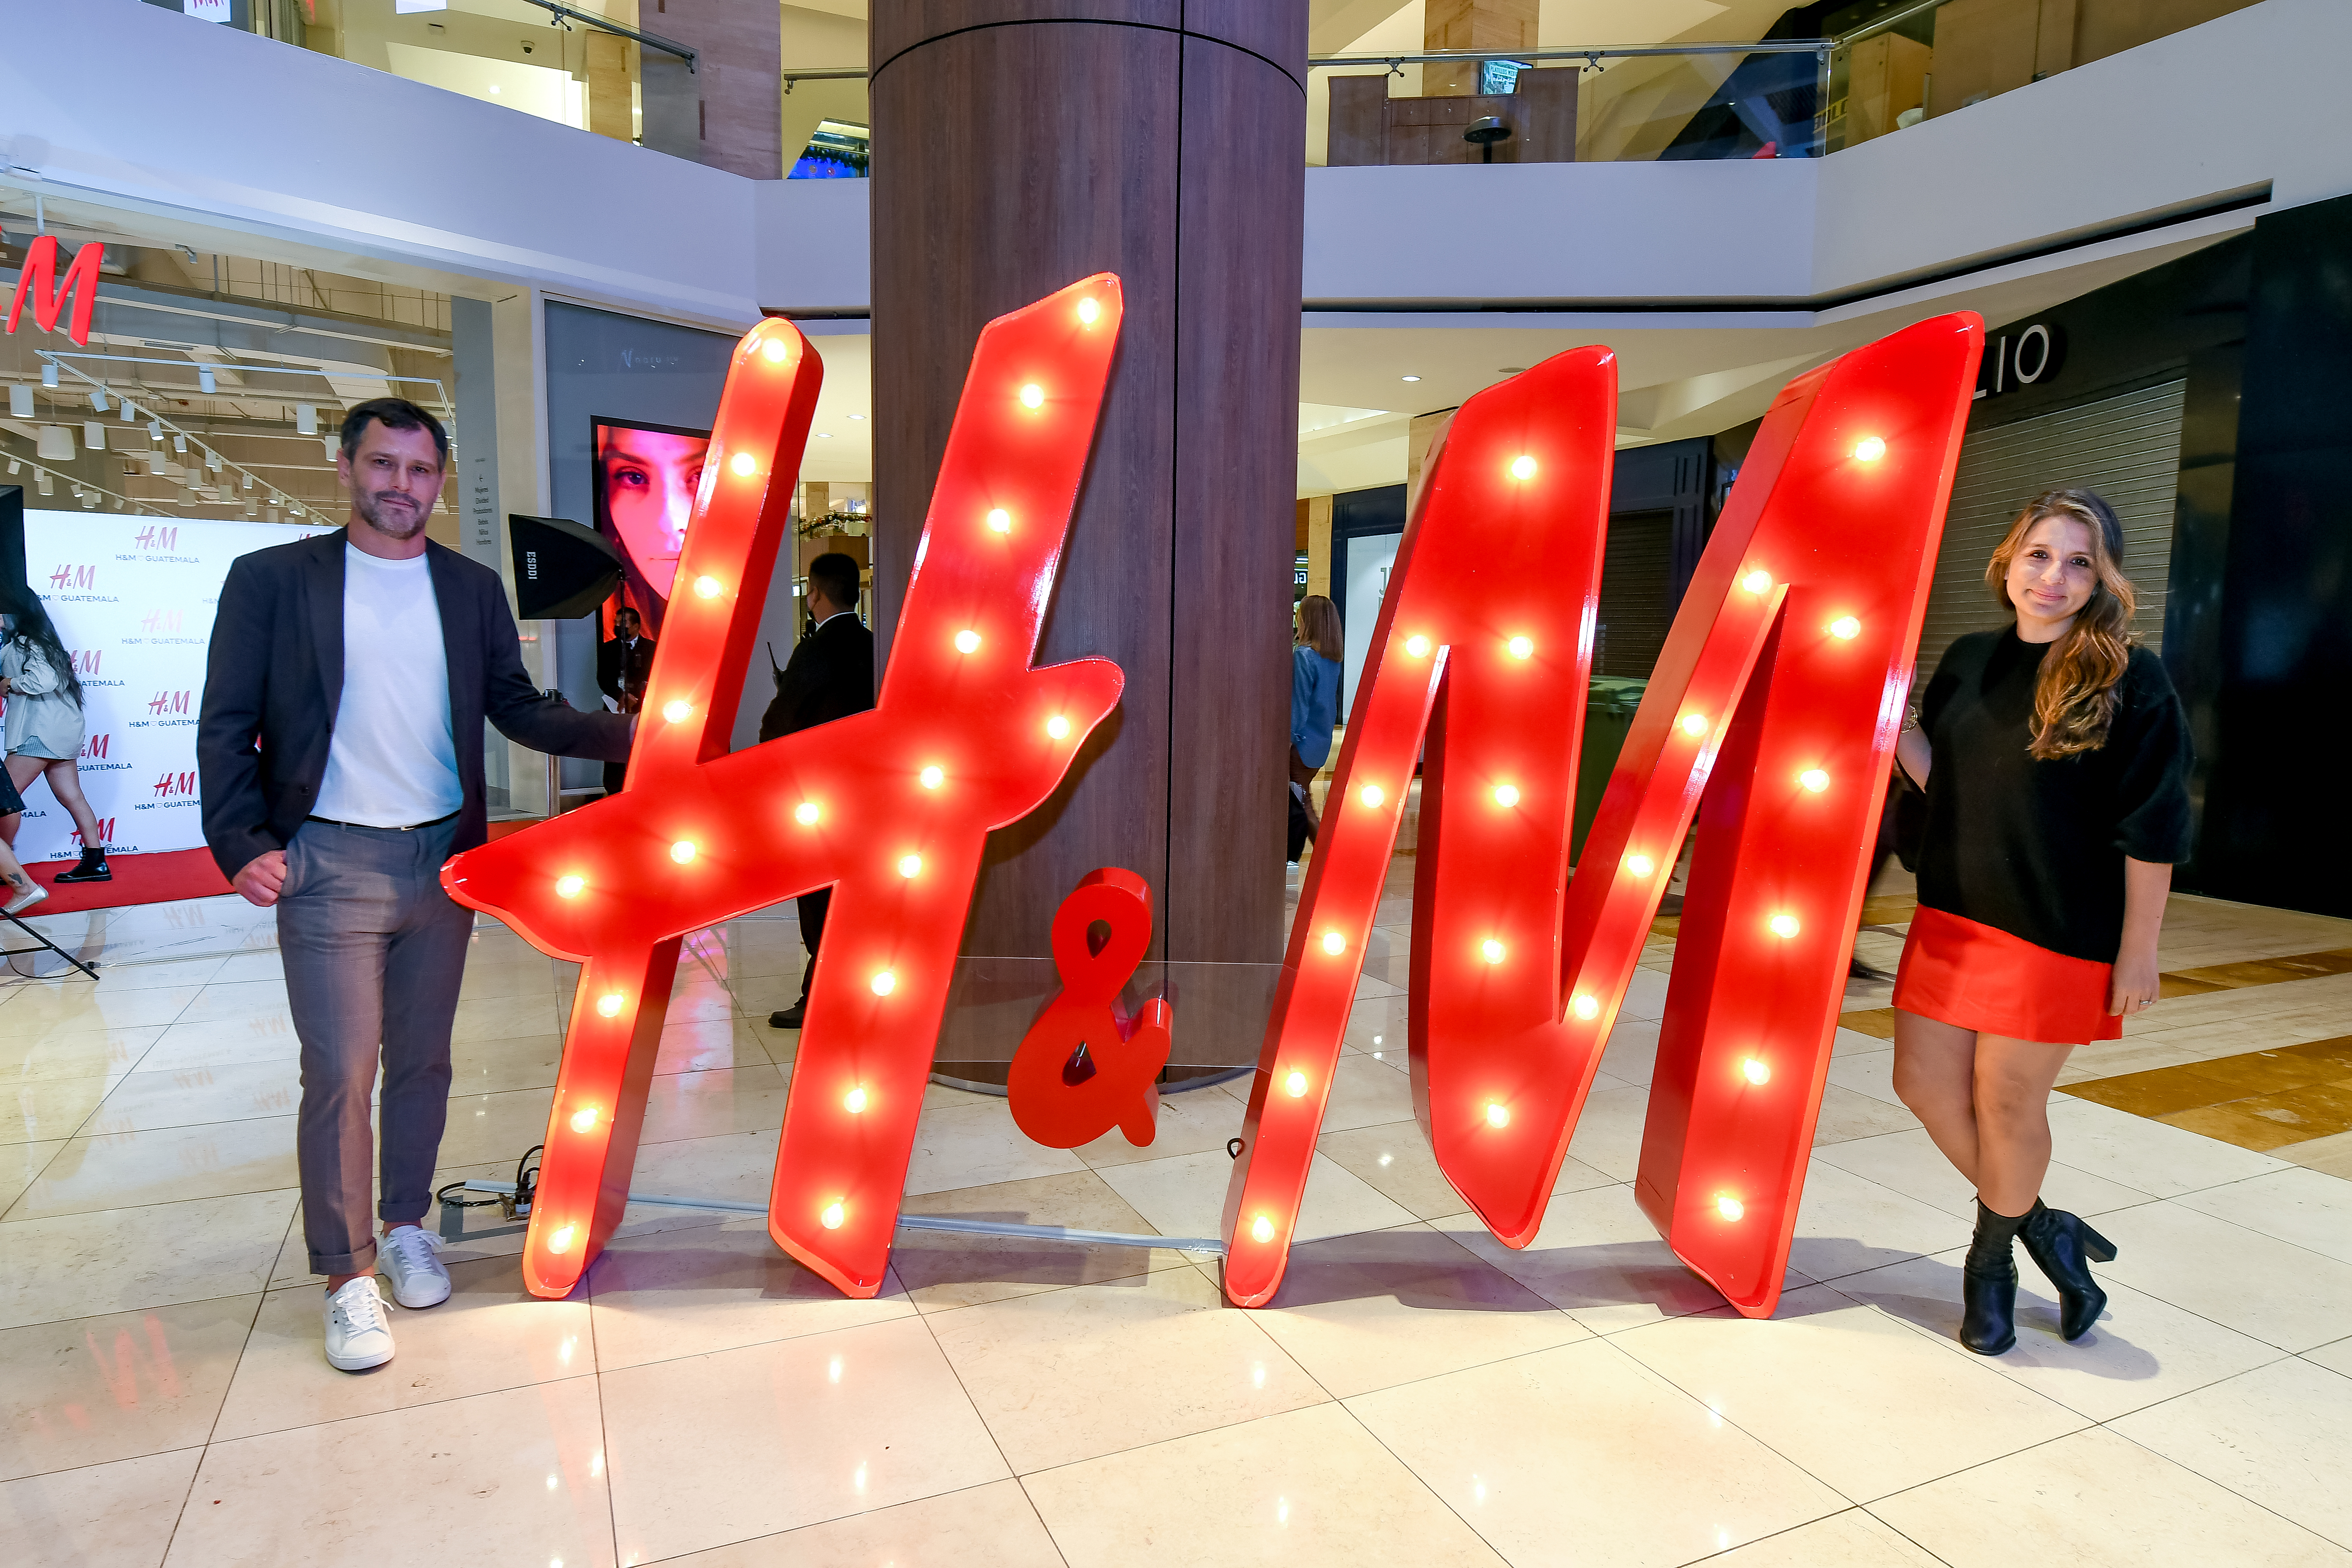 H&M abre una nueva tienda con características sostenibles en la región